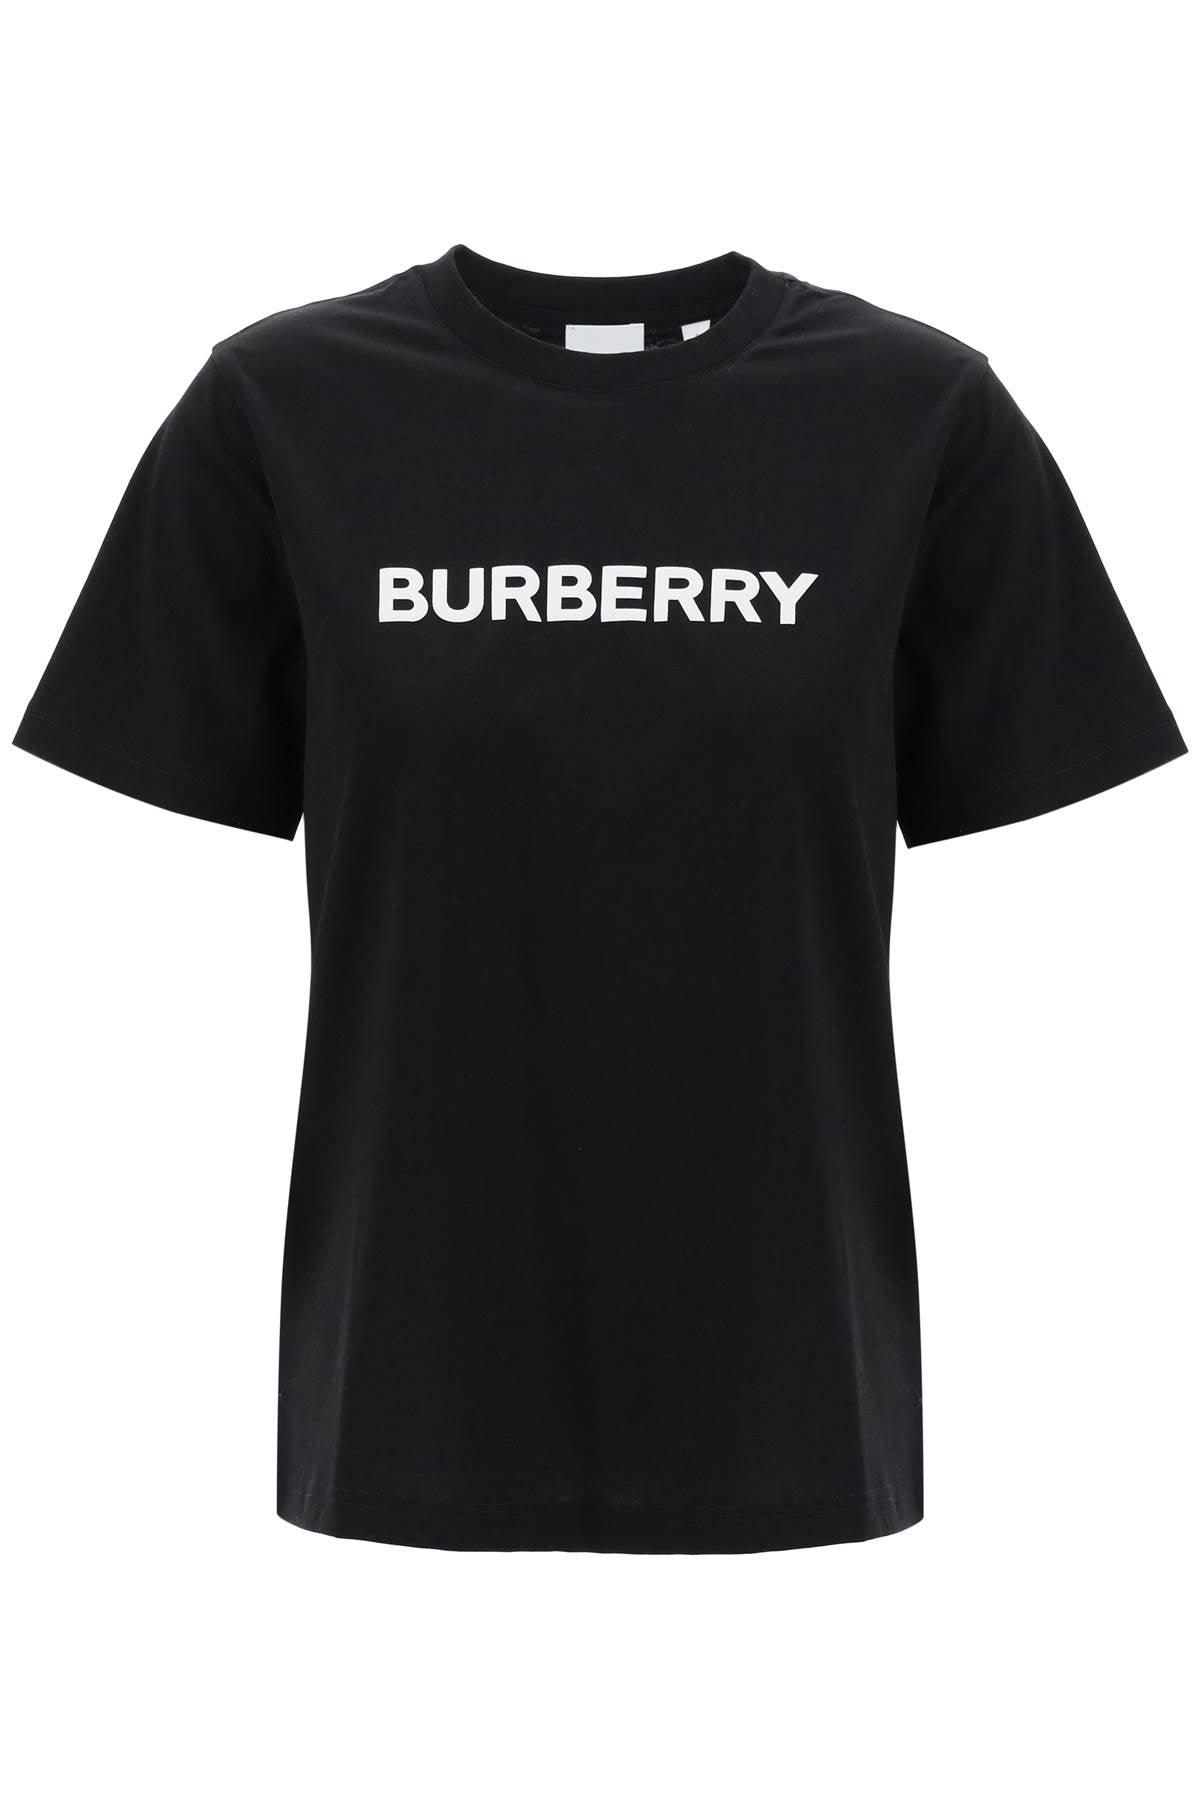 Burberry Margot Logo T Shirt - JOHN JULIA